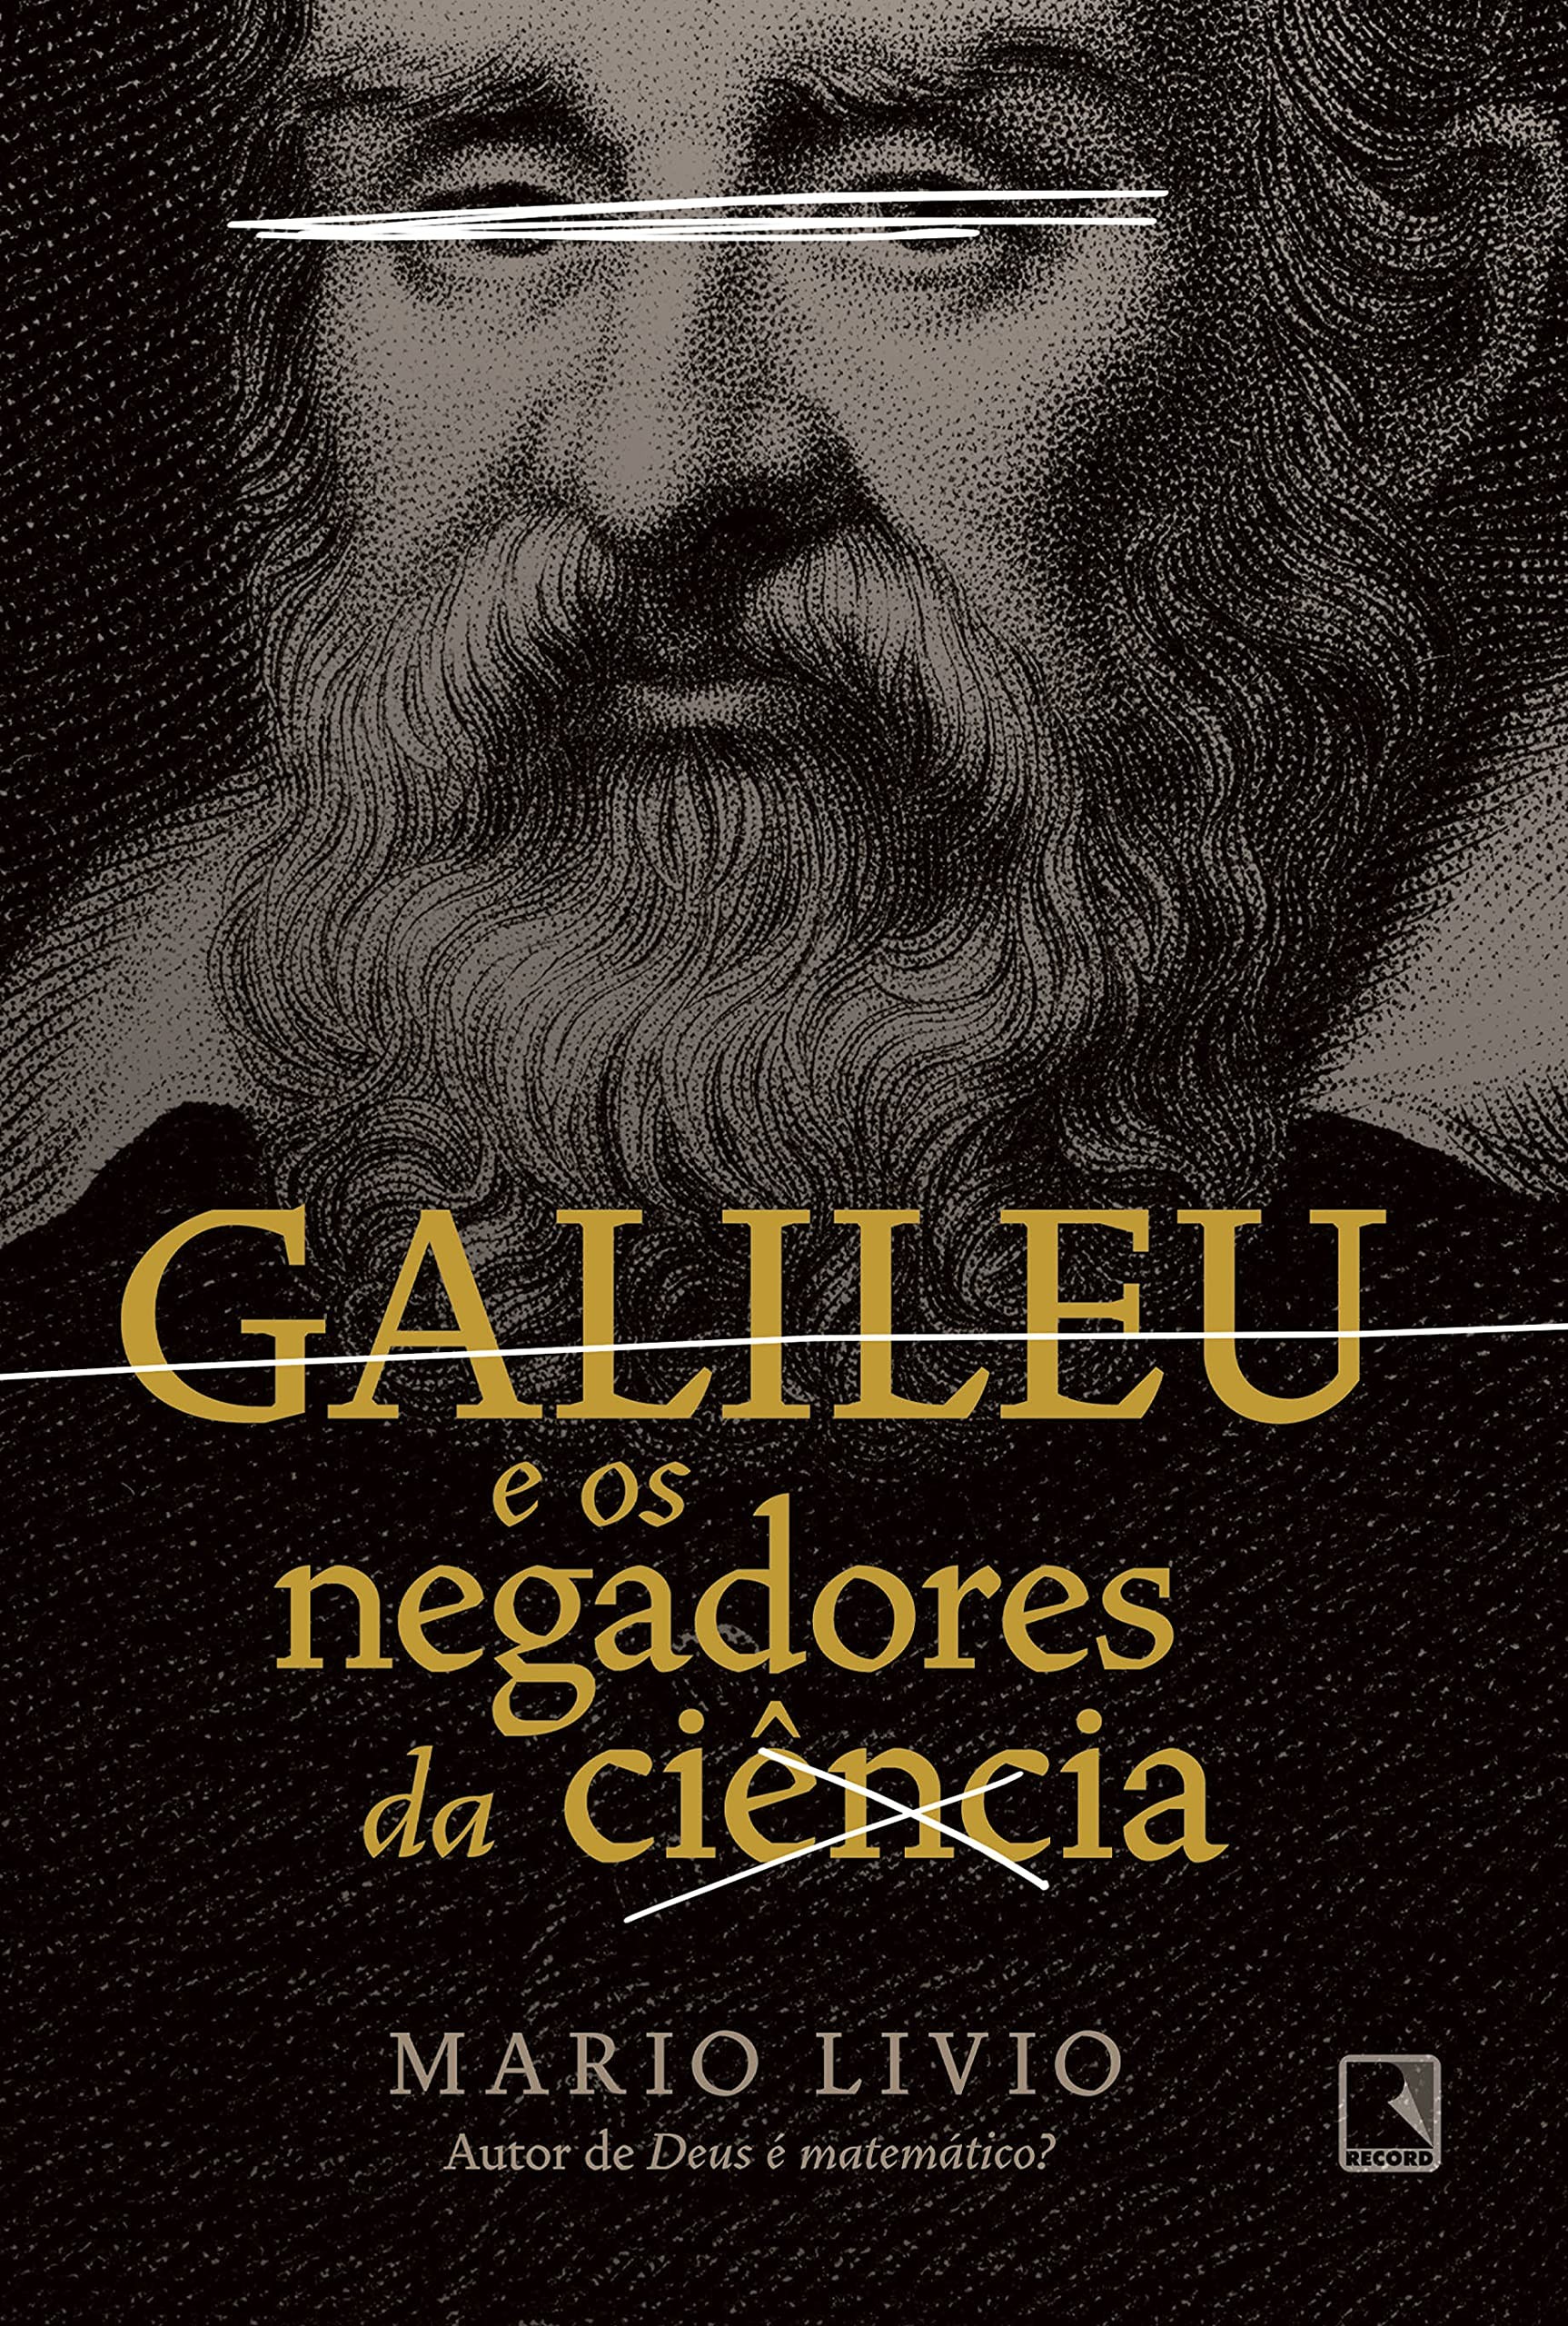 Galileu e os negadores da ciência, de Mario Livio (Record, 308 páginas, R$59,90) (Foto: Divulgação)